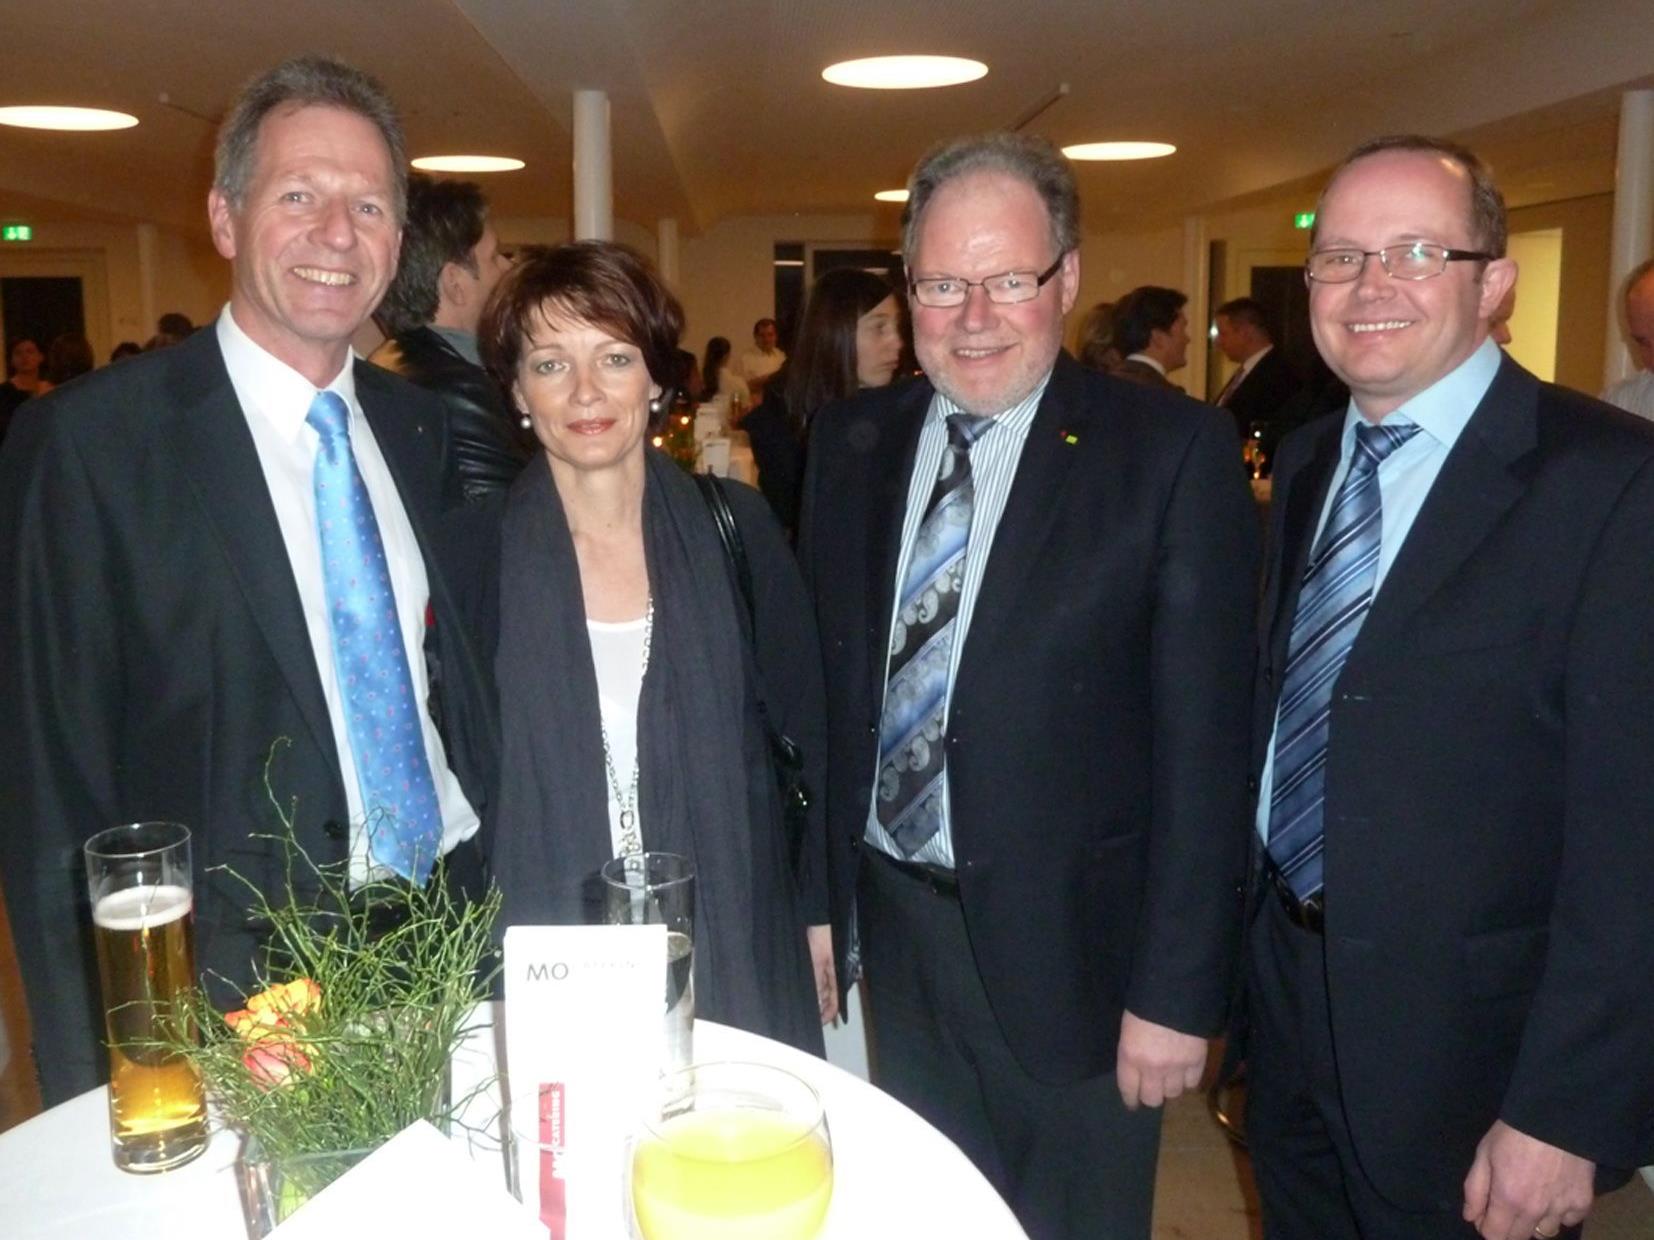 Bgm. Richard Amann mit Anni, Bgm. Werner Huber und StR. Charly Dobler beim Neujahrsempfang.